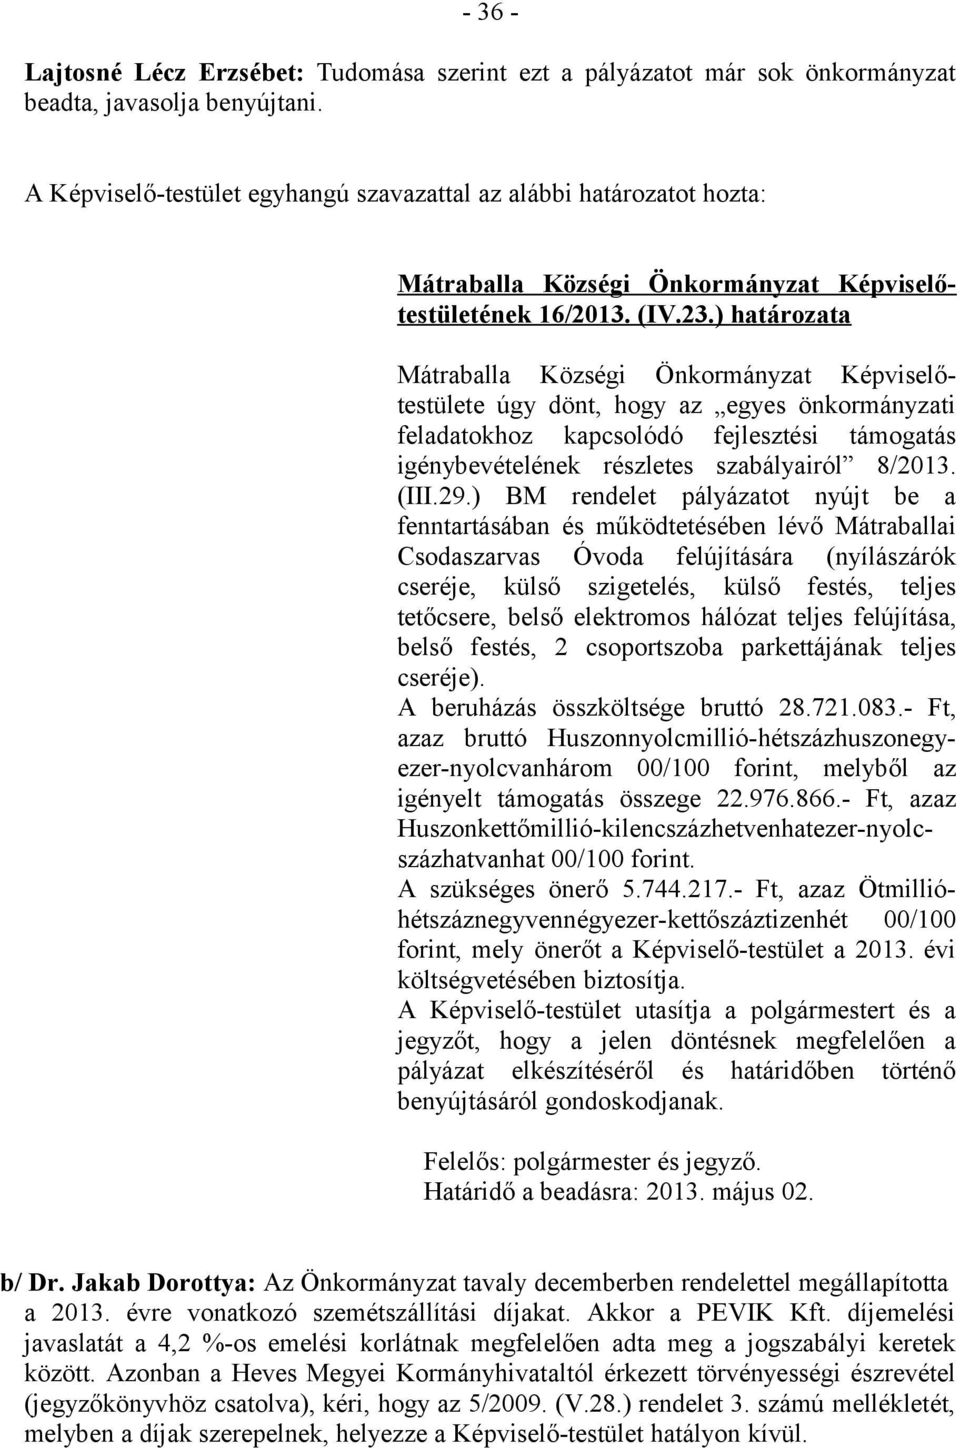 ) határozata Mátraballa Községi Önkormányzat Képviselőtestülete úgy dönt, hogy az egyes önkormányzati feladatokhoz kapcsolódó fejlesztési támogatás igénybevételének részletes szabályairól 8/2013.